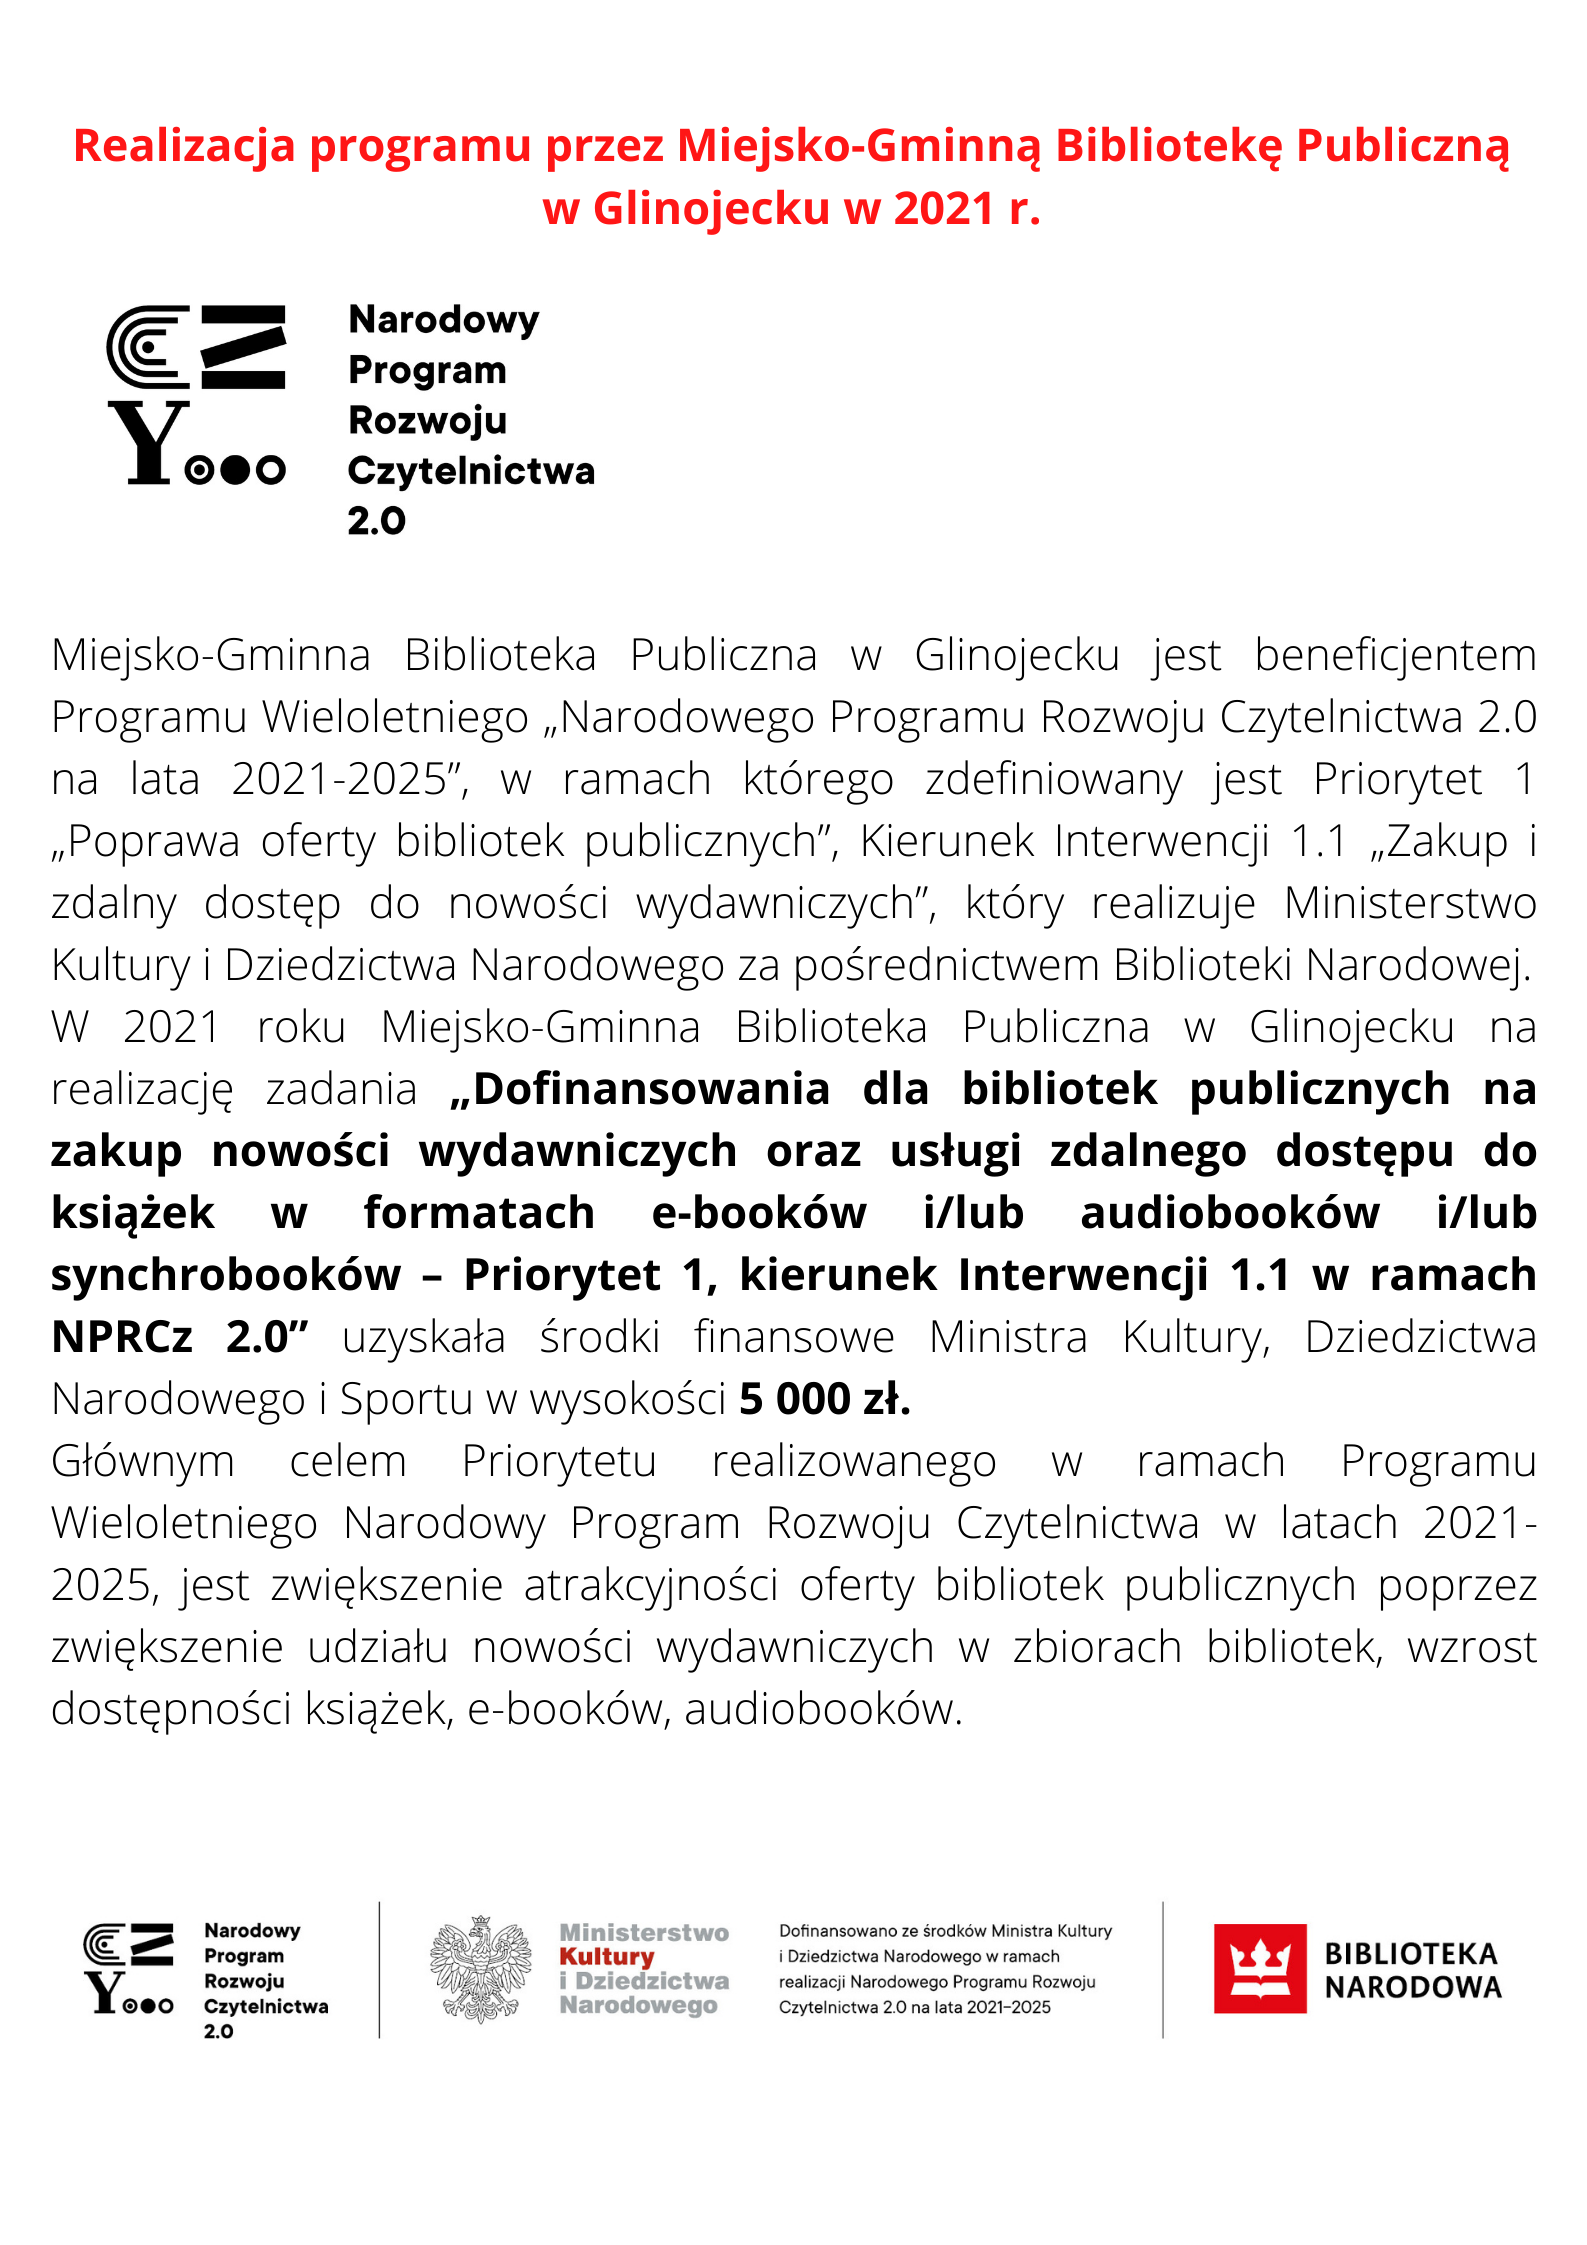 Realizacja programu przez Miejsko Gminną Bibliotekę Publiczną w Glinojecku w 2021 r. poprawione